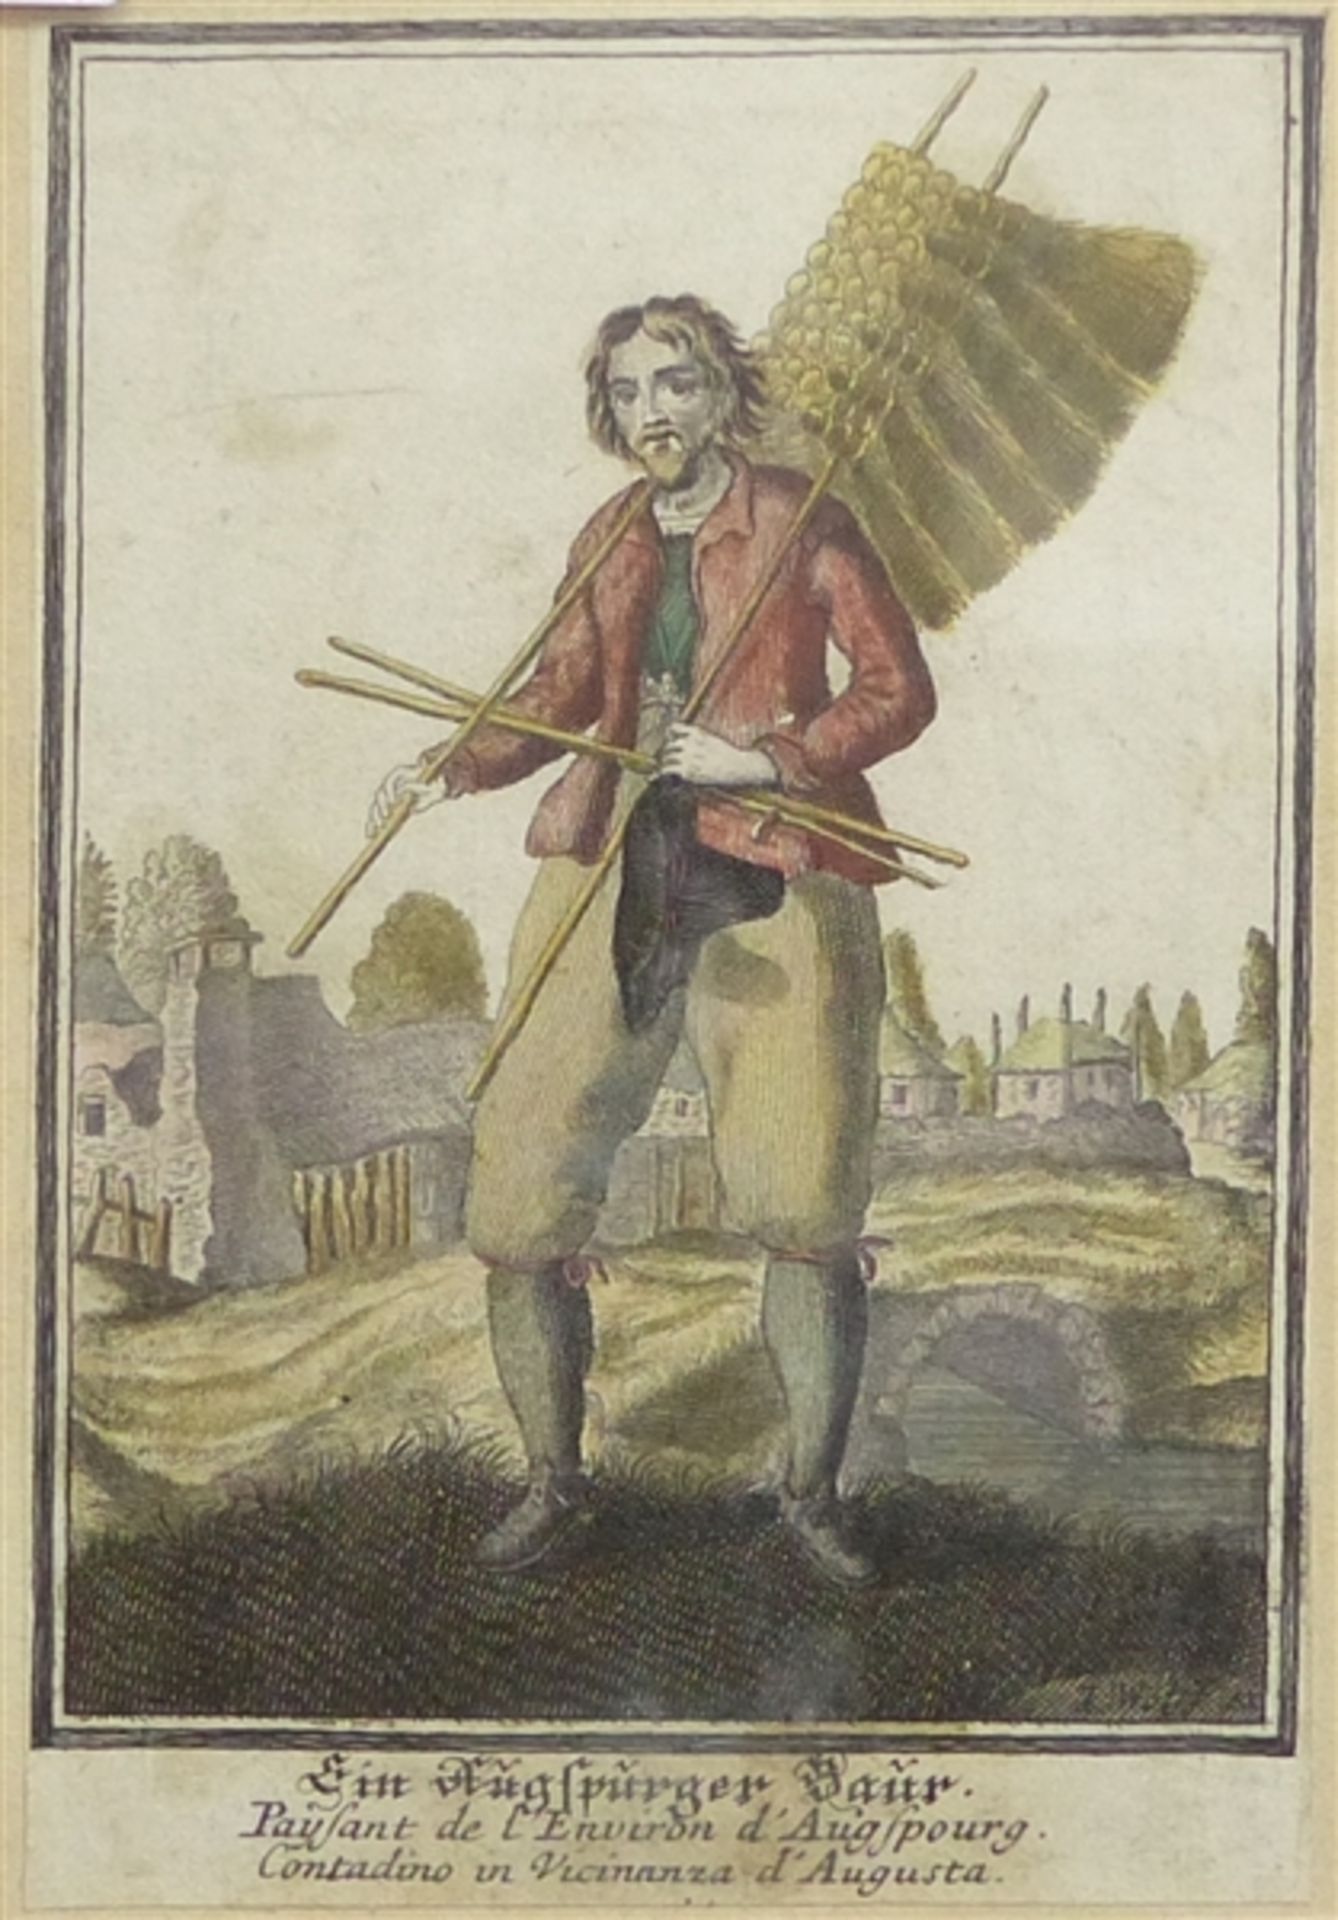 Kupferstich, 18. Jh. Ein Augsburger Baur, verlegt von Jeremias Wolff, coloriert, 15x10 cm, im